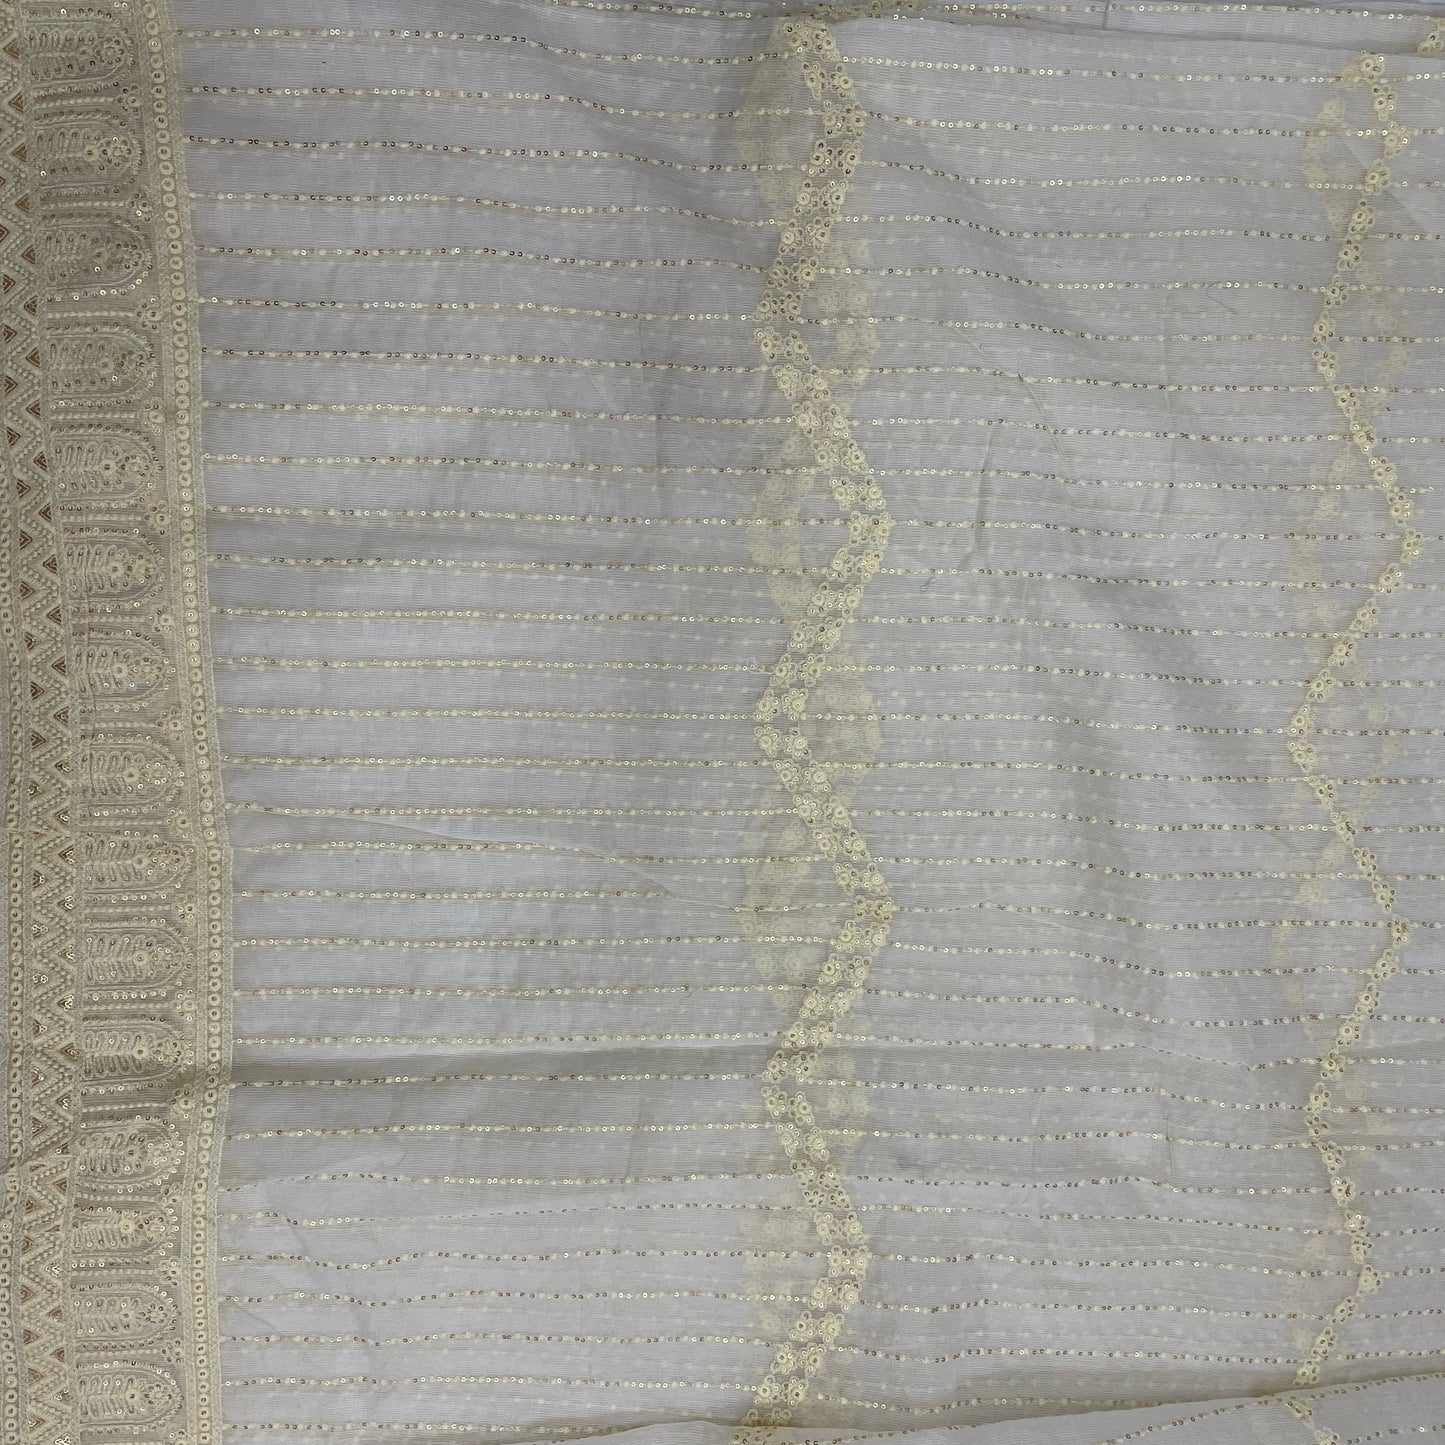 White With Thread Embroidery Kota Cotton Fabric - TradeUNO